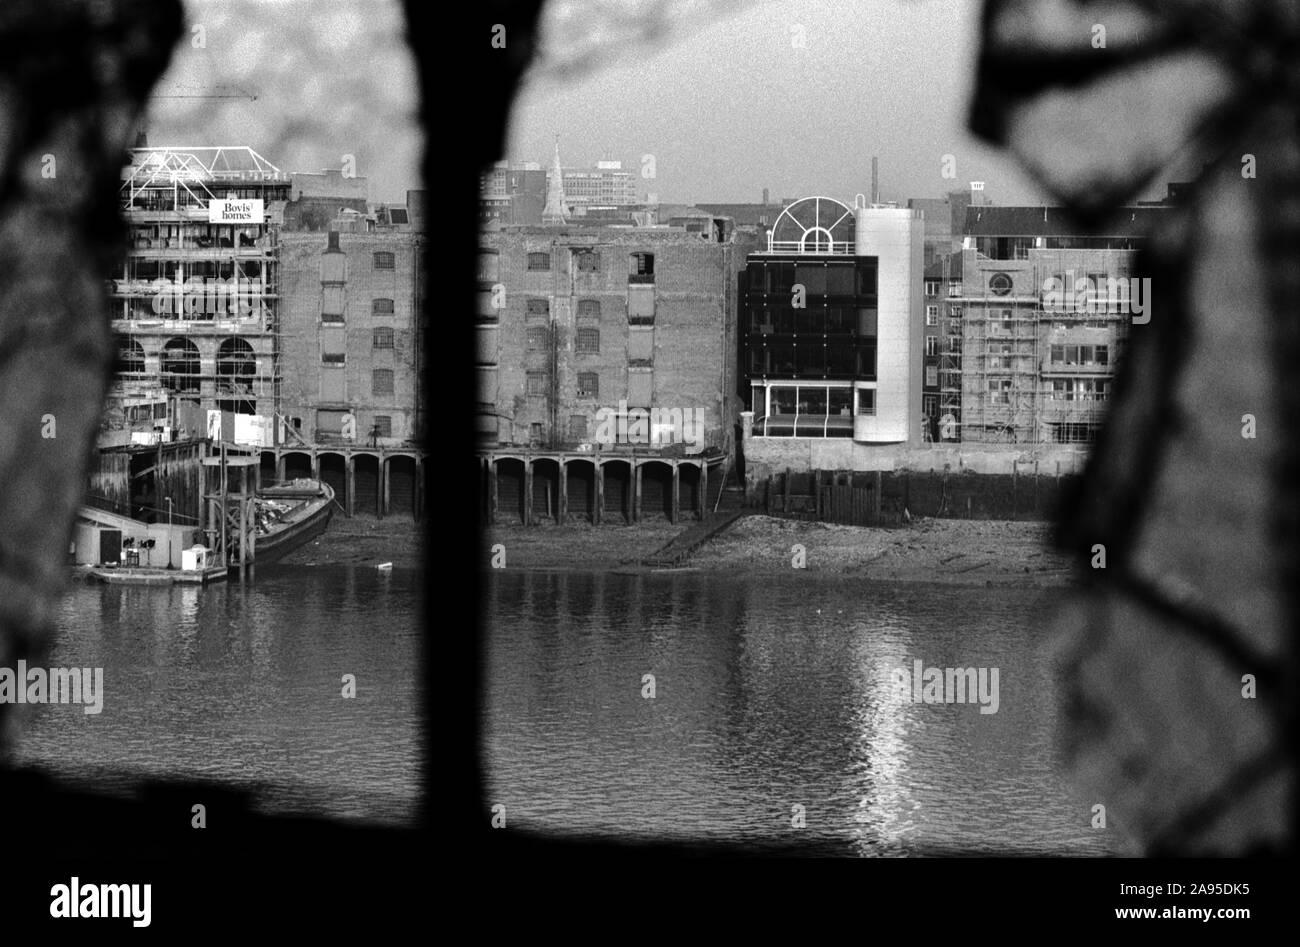 London Docklands Development degli anni ottanta NEL REGNO UNITO. Nuovo sviluppo sul lato nord del fiume Thame è 84 St Katharine modo. Vecchio e magazzini abbandonati in corso di sviluppo. 1987 UK HOMER SYKES Foto Stock